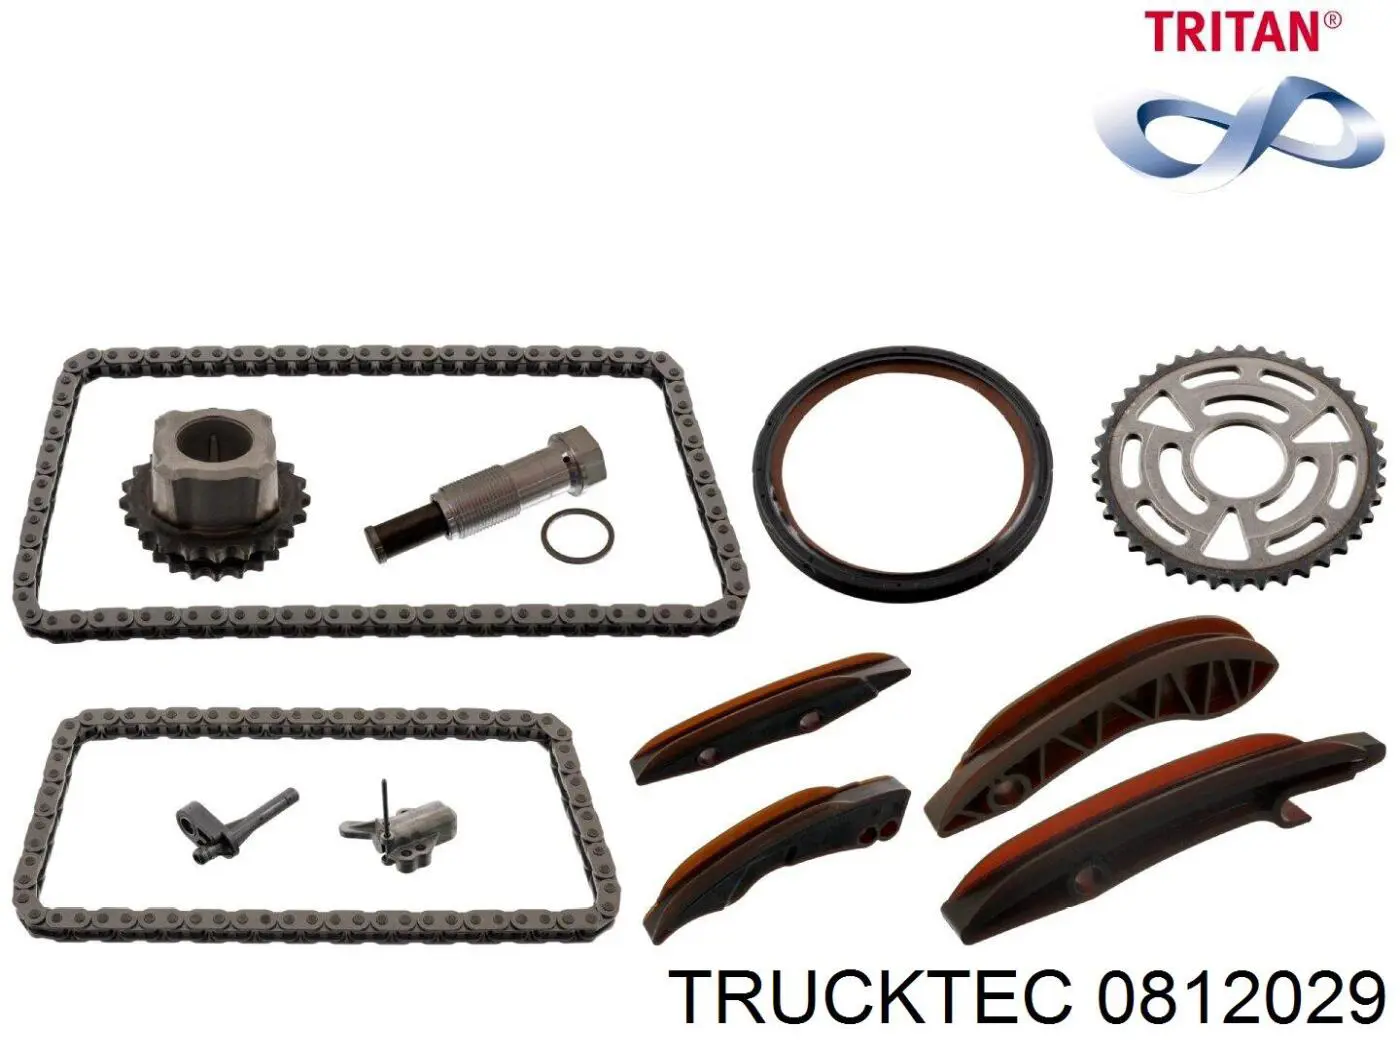 08.12.029 Trucktec tensor, cadena de distribución, bomba alta presión